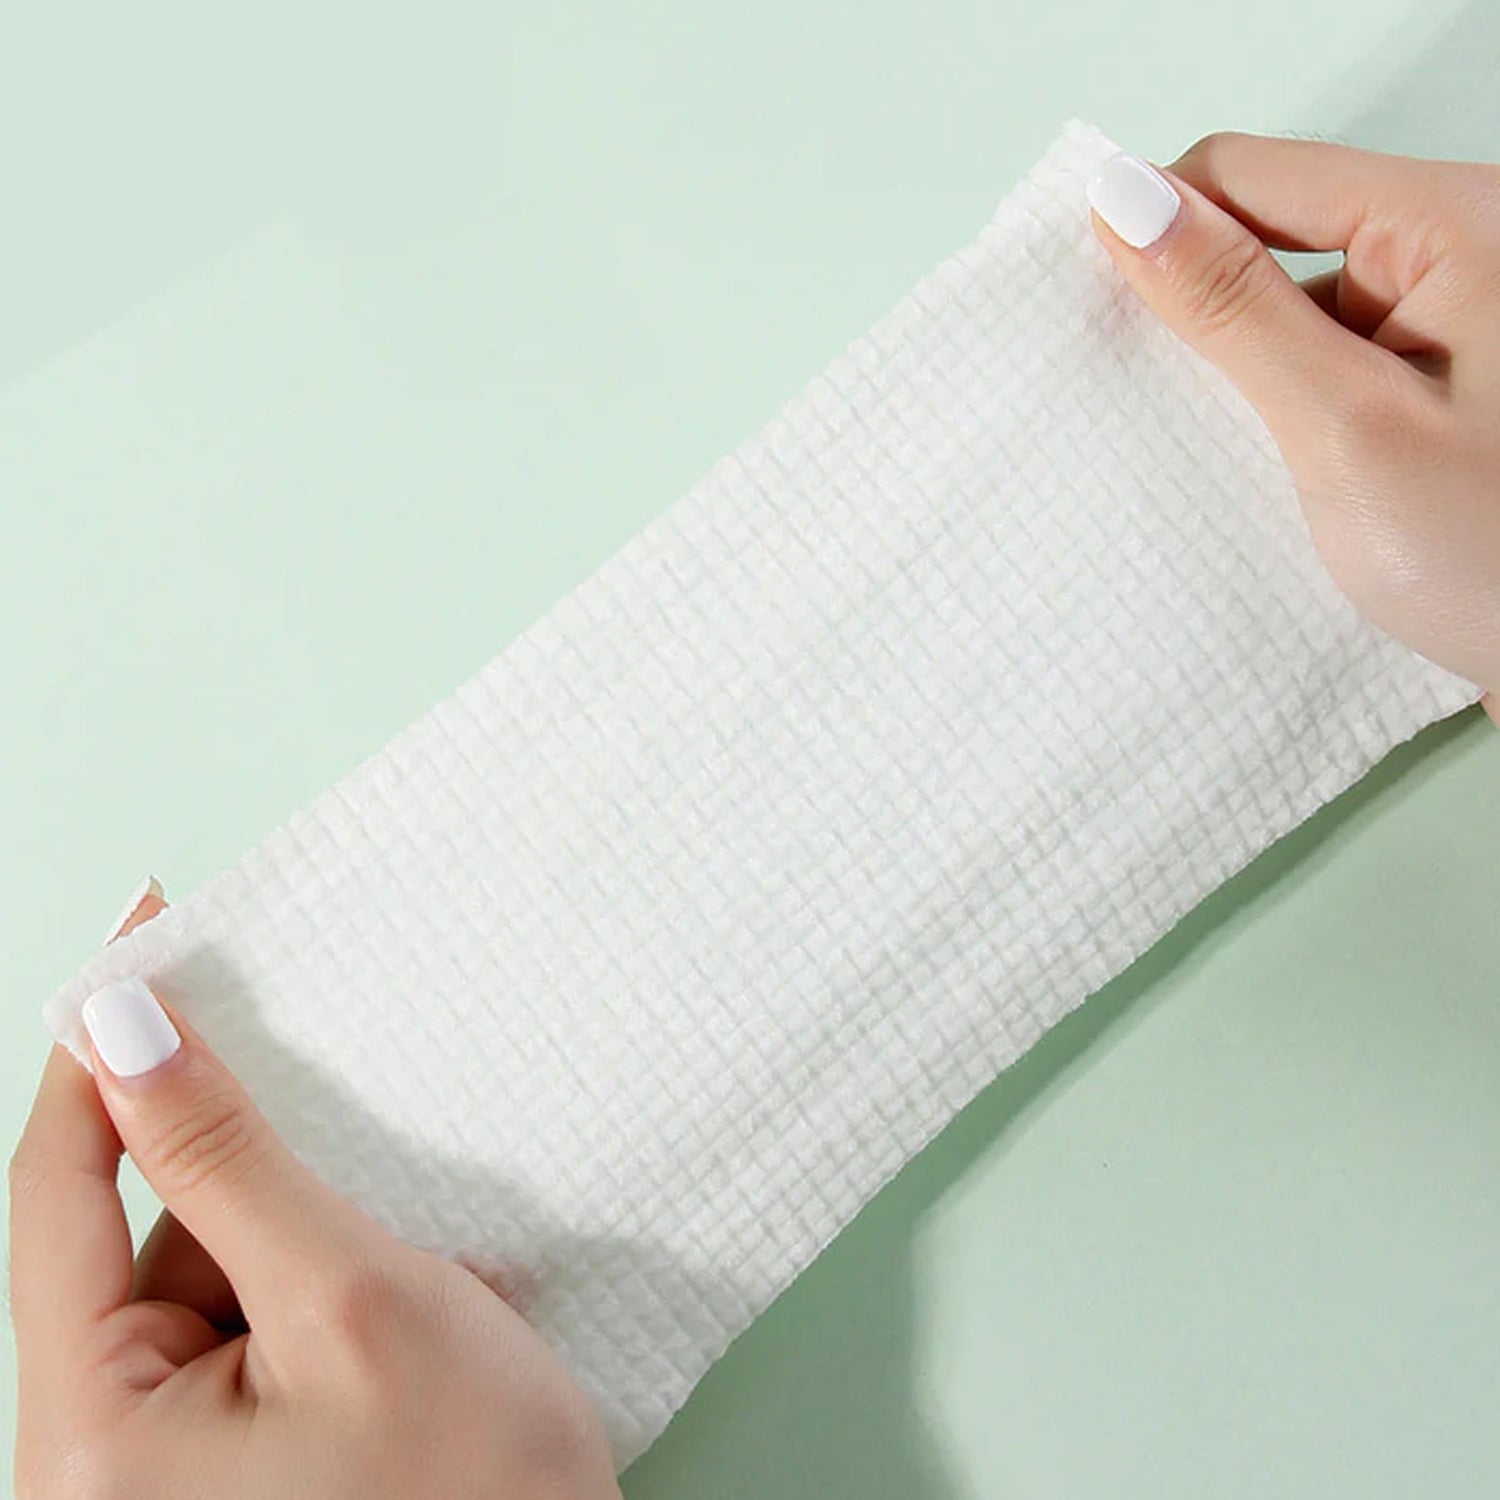 AMORTALS Disposable Face Towel 70pcs